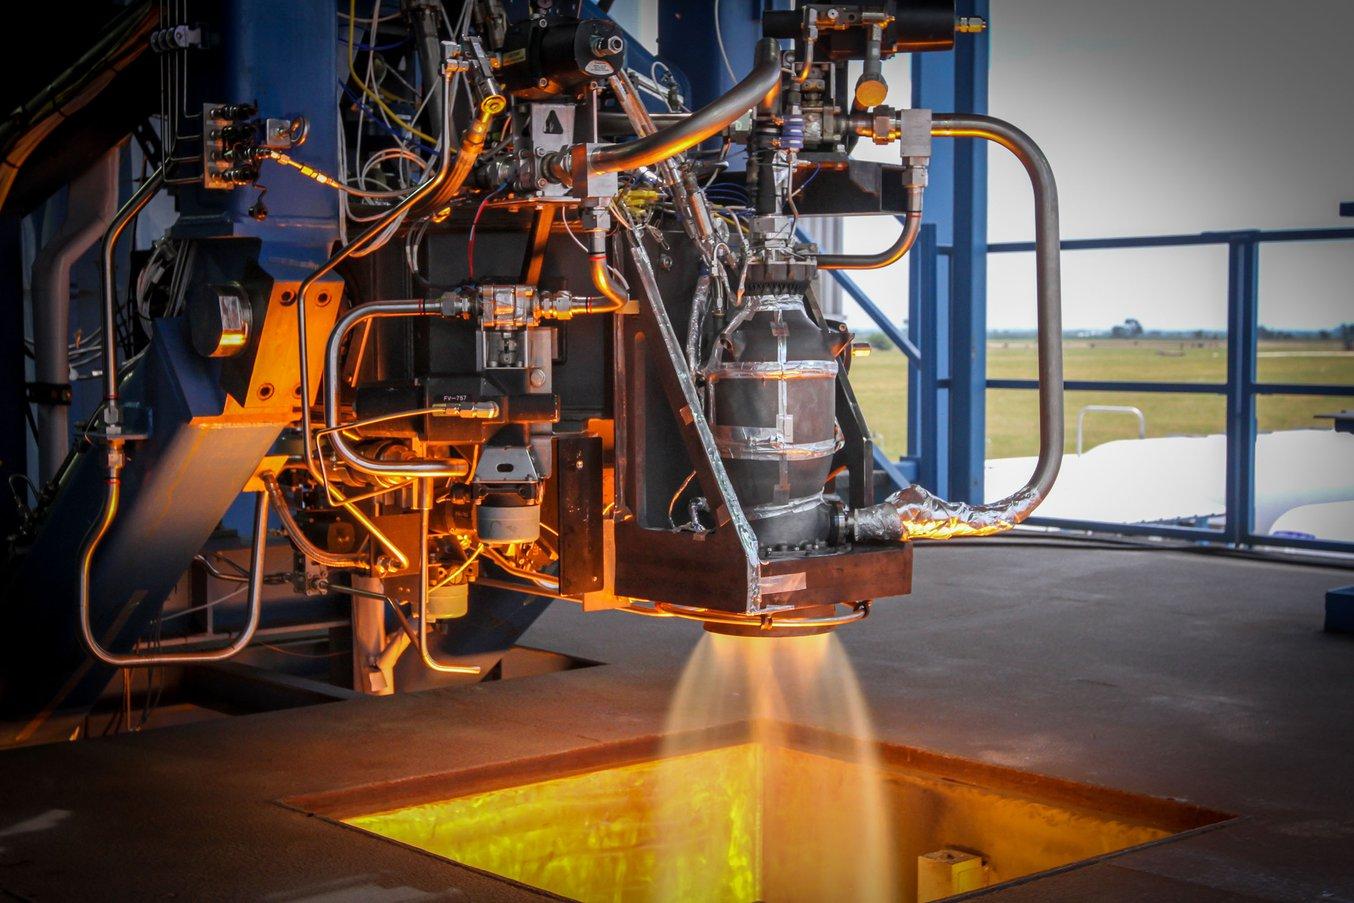 Das Crew Dragon von SpaceX, ausgestattet mit 3D-gedruckten SuperDraco-Triebwerken, hatte seinen Jungfernflug im März 2019. (Quelle: SpaceX)